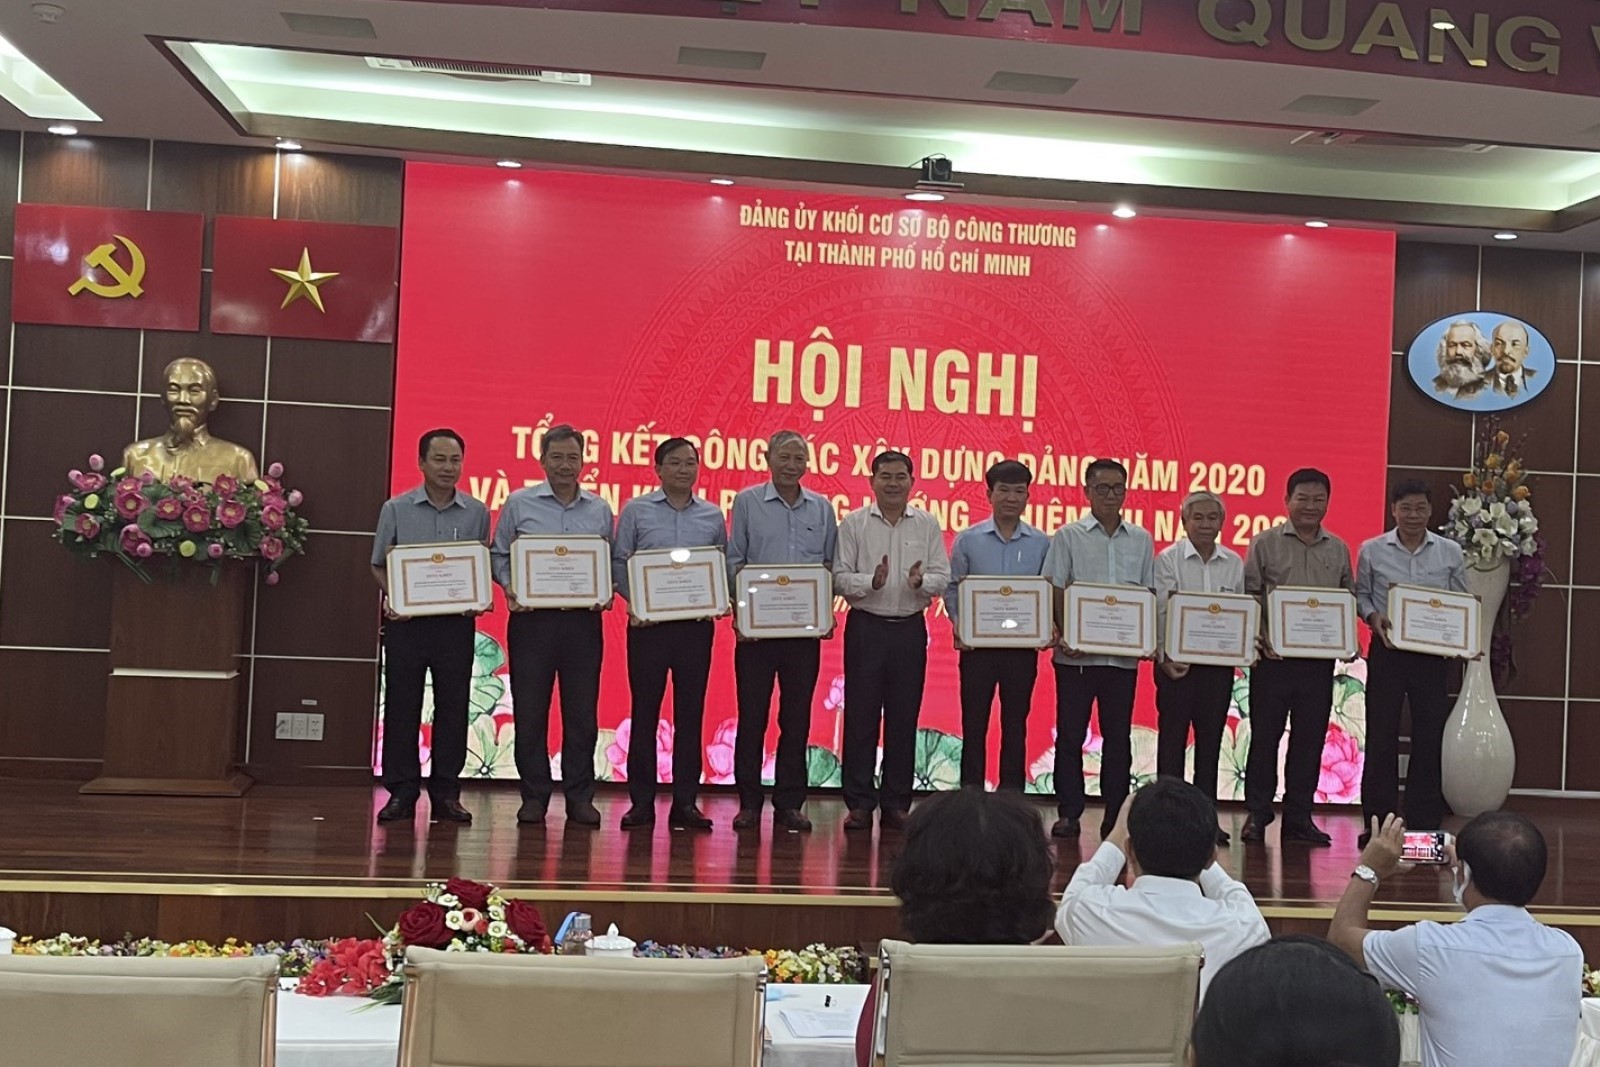 Đảng bộ Trường Đại học Công nghiệp Thực phẩm TP. Hồ Chí Minh nhận danh hiệu Đảng bộ “Hoàn thành xuất sắc nhiệm vụ”